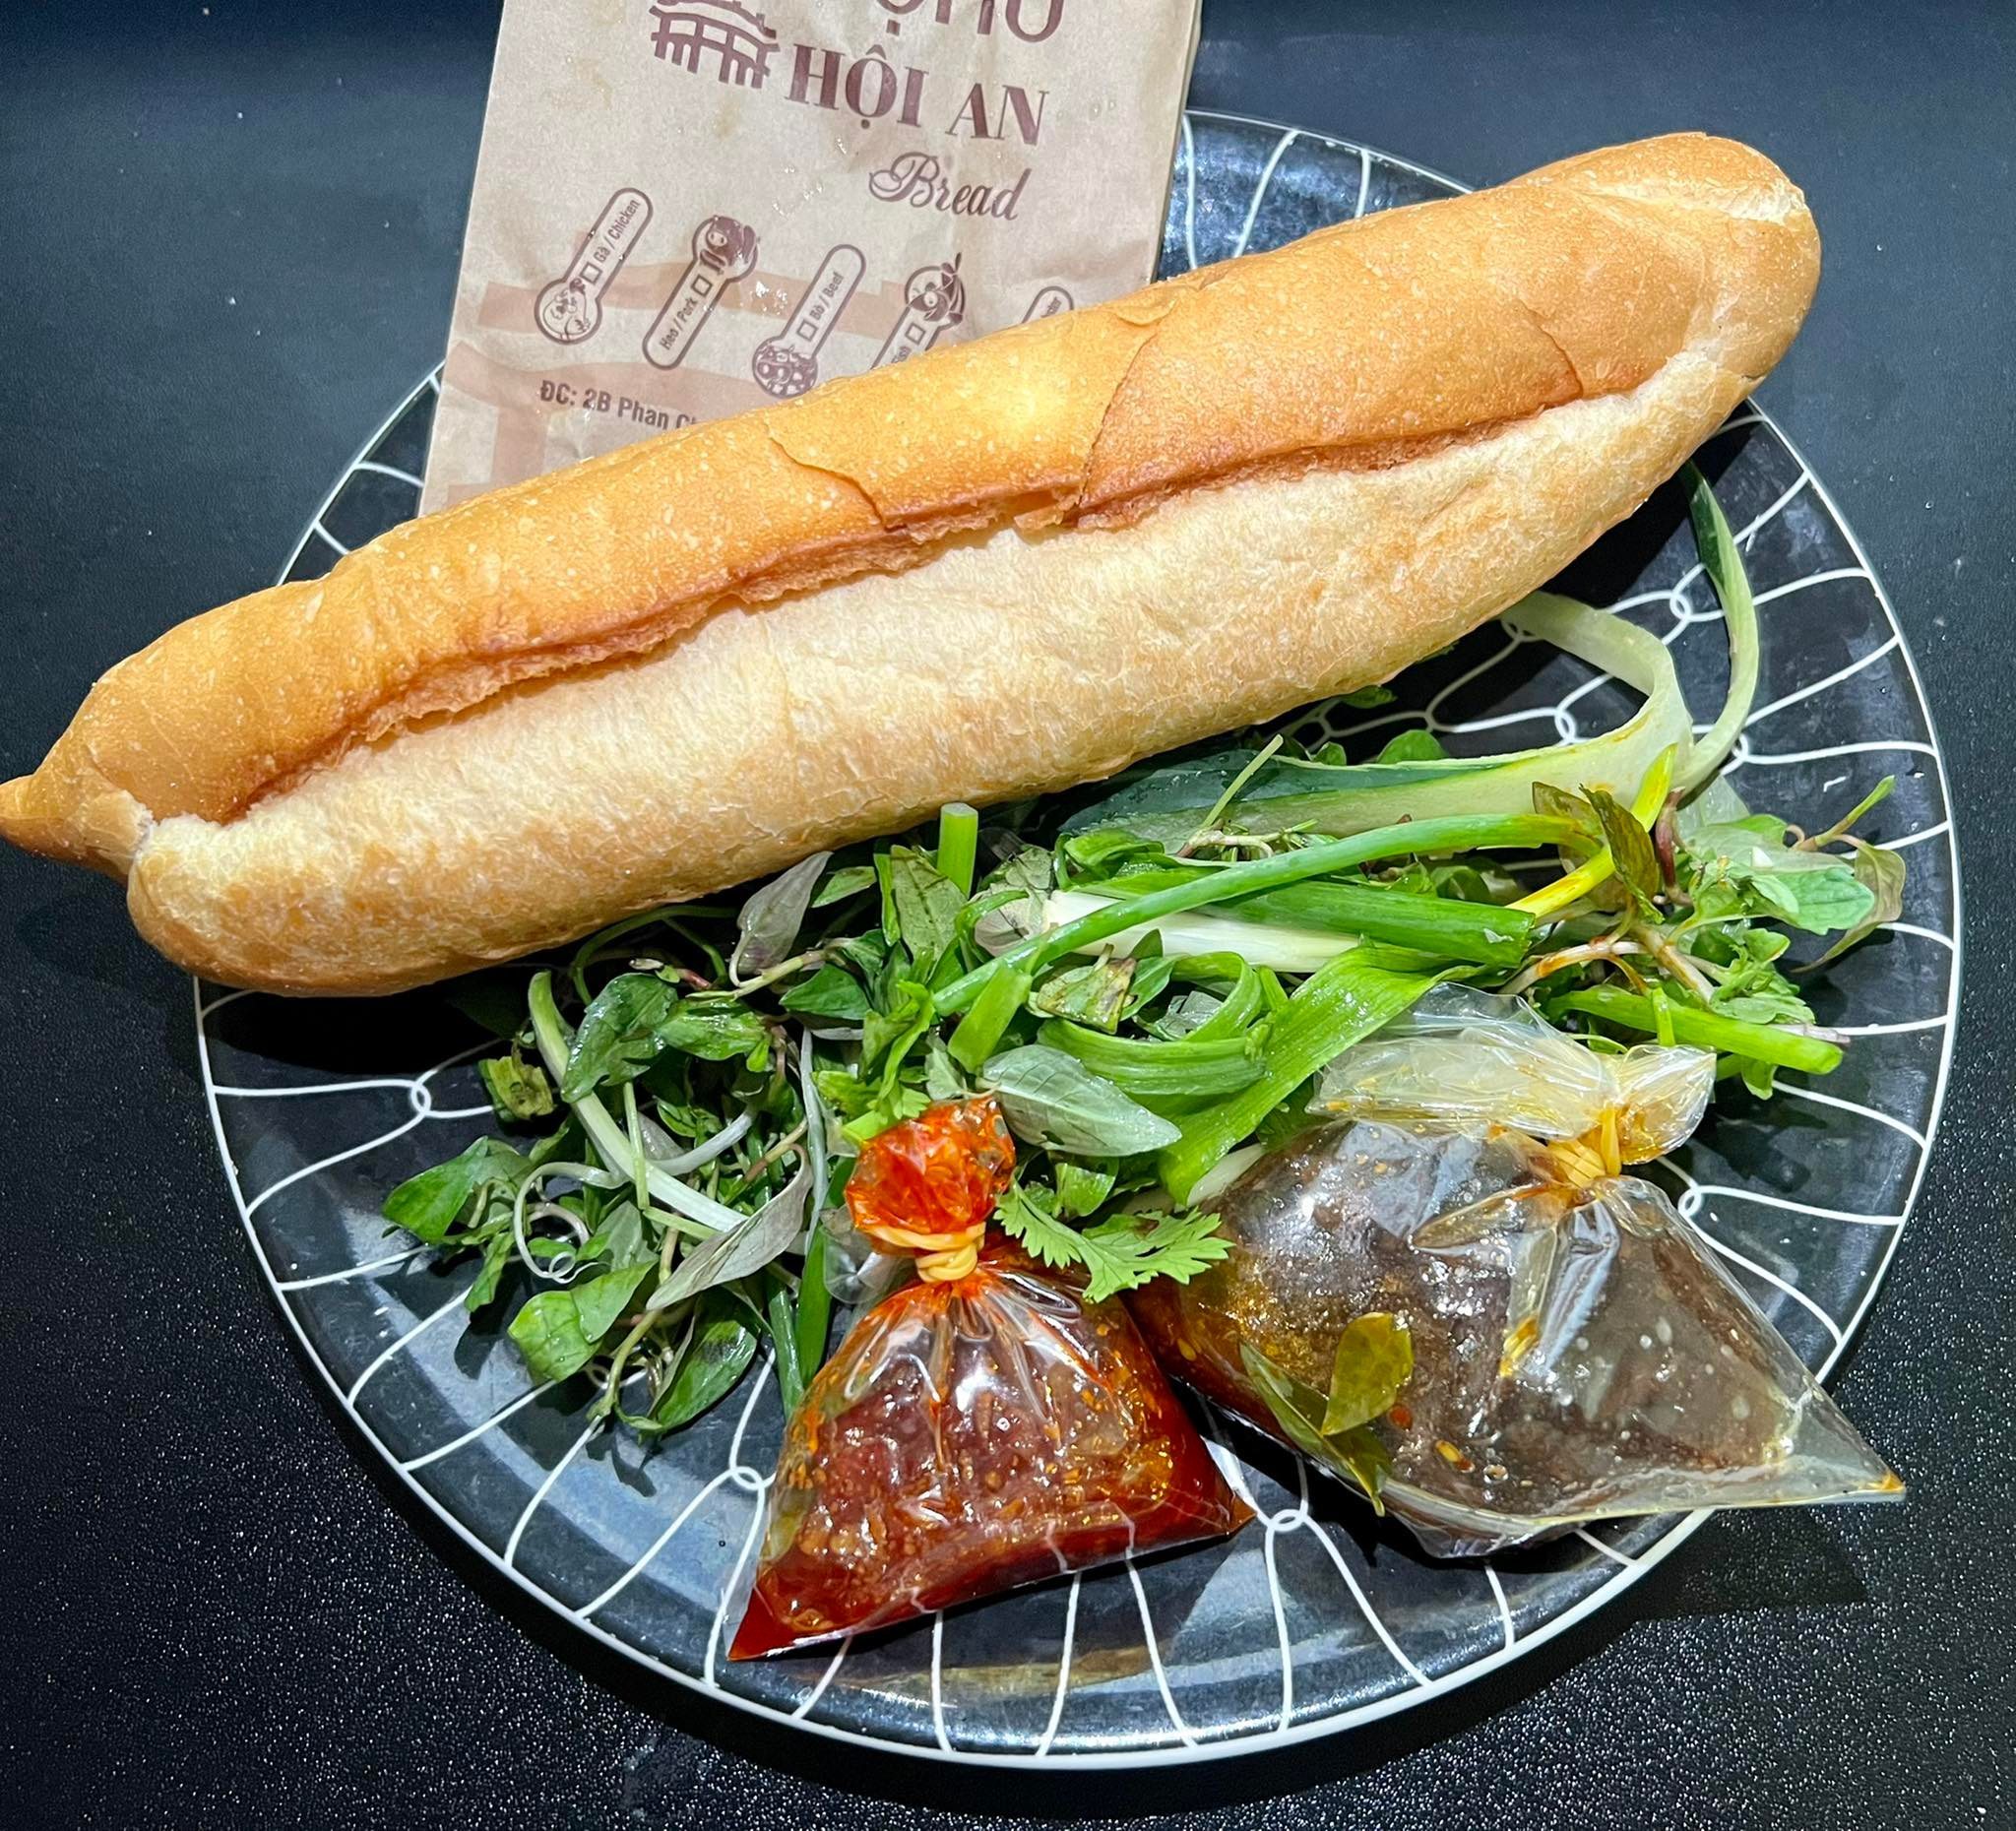 Bánh mì nổi tiếng Hội An 'đi' máy bay ra Hà Nội, giá 60 ngàn/ổ vẫn 'cháy hàng' - 3